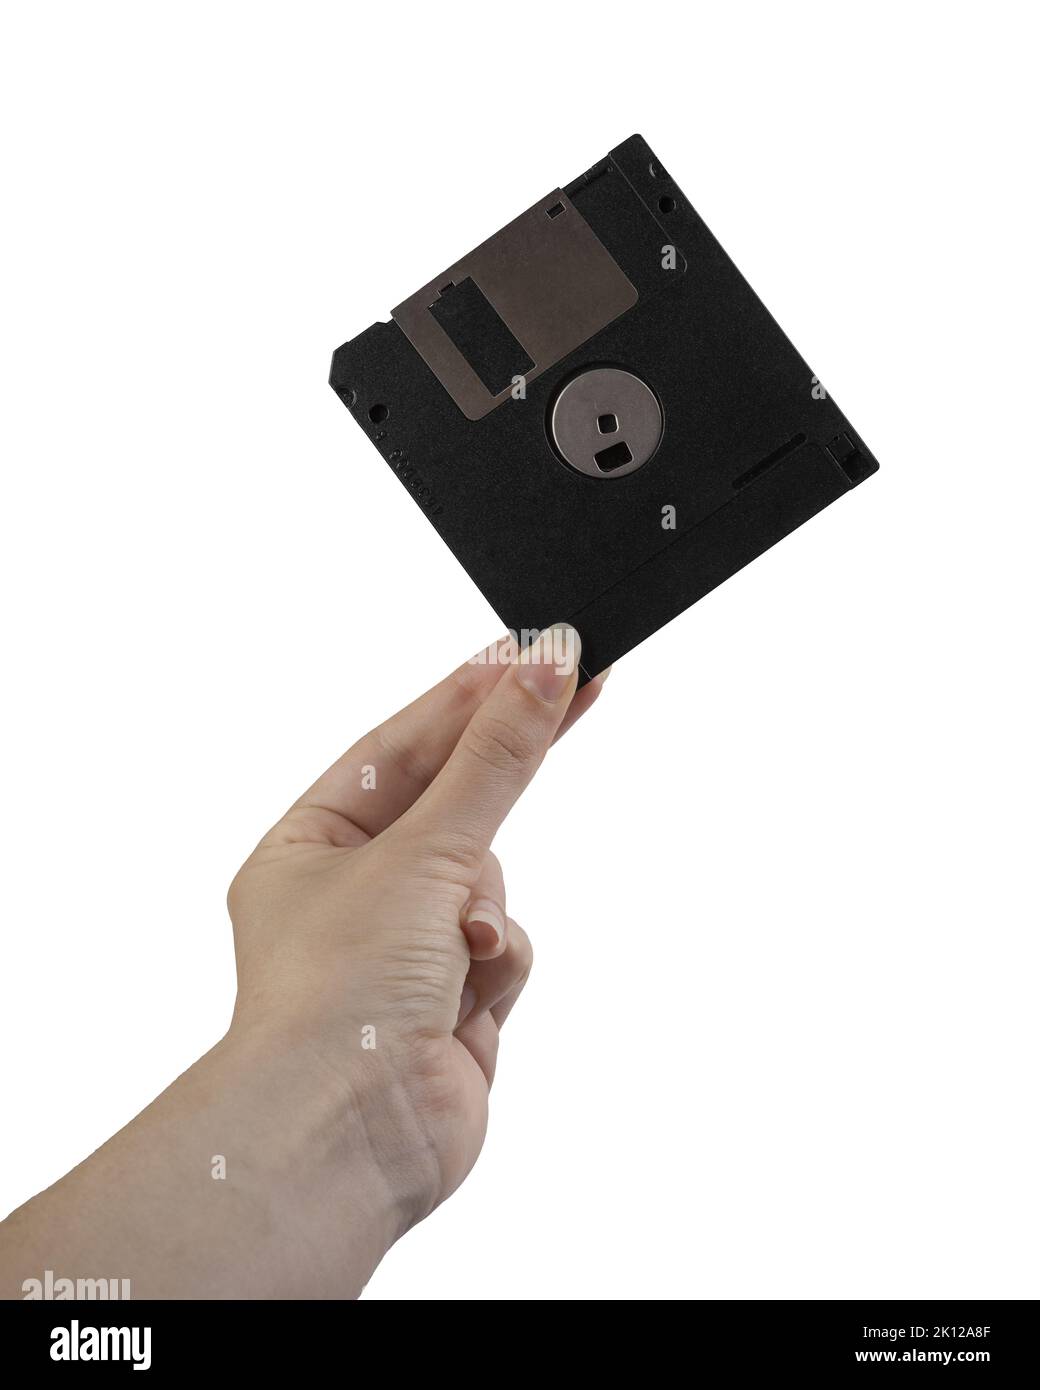 un vecchio floppy disk nella mano femmina su sfondo bianco Foto Stock